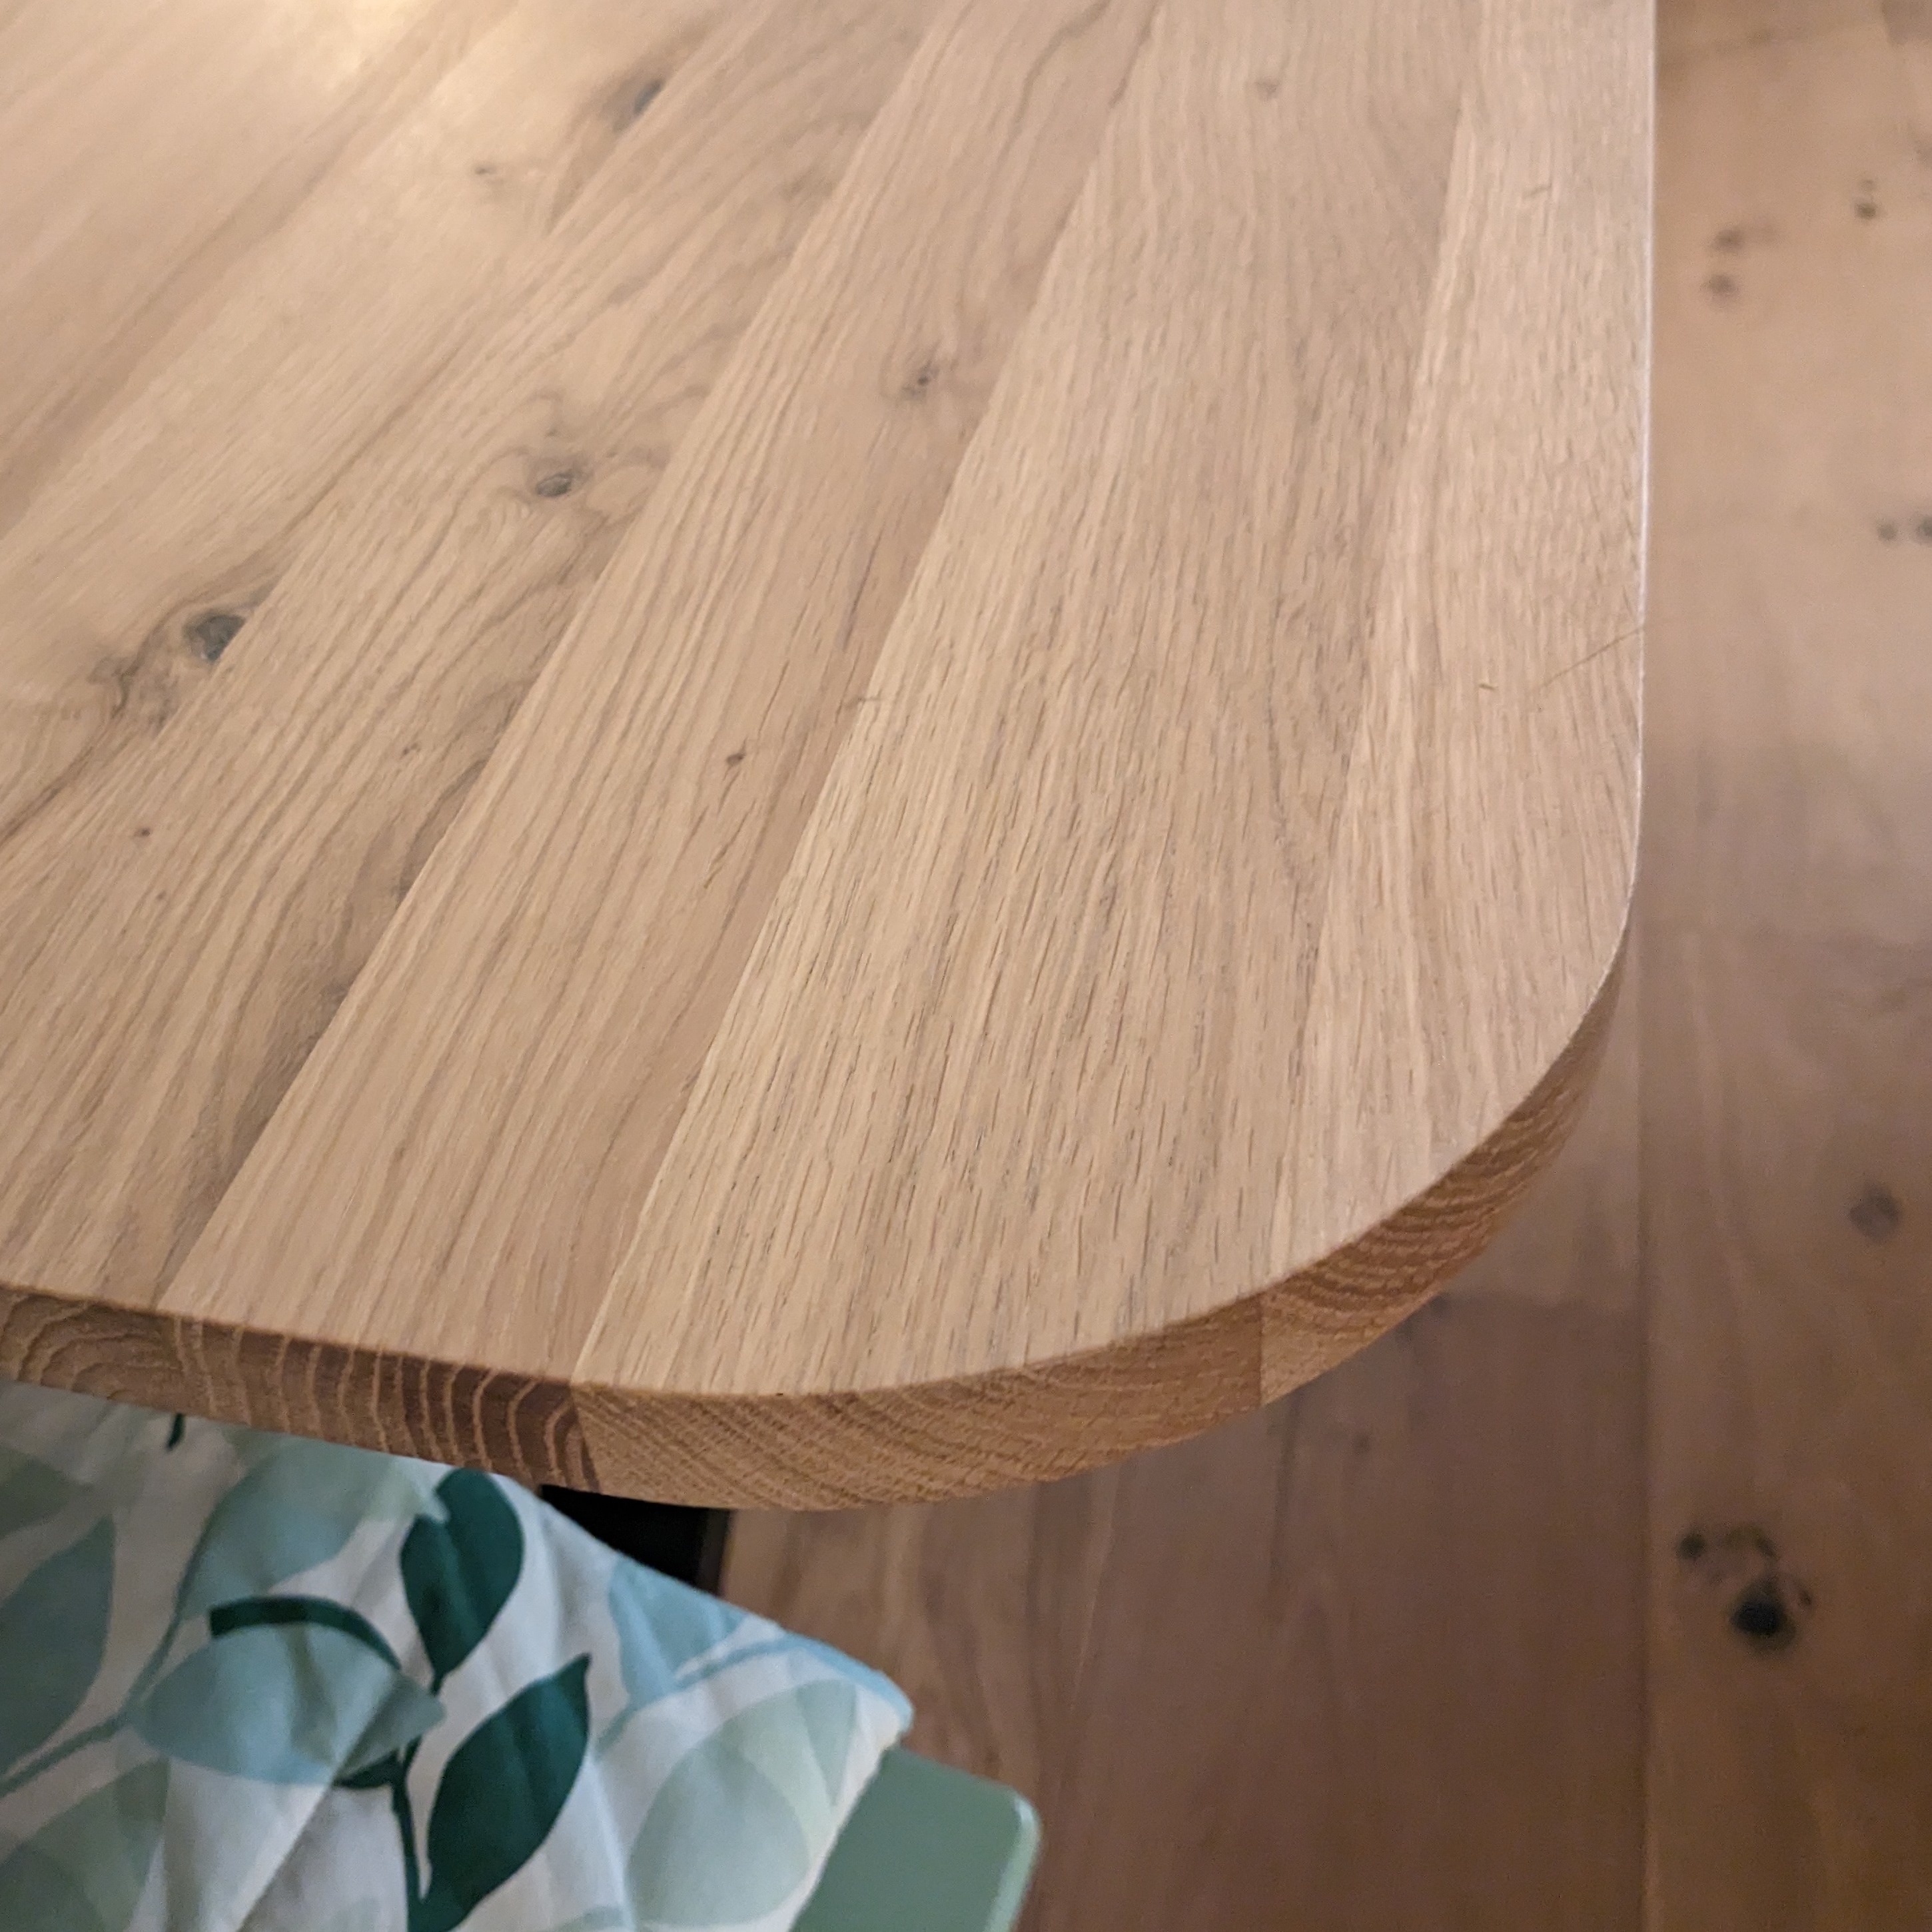  Eiken tafelblad met ronde hoeken - op maat - 2 cm dik (1-laag) - rustiek Europees eikenhout - verlijmd kd 8-12% - 50-120x50-350 cm - Afgeronde hoeken radius 5, 8, of 10 cm